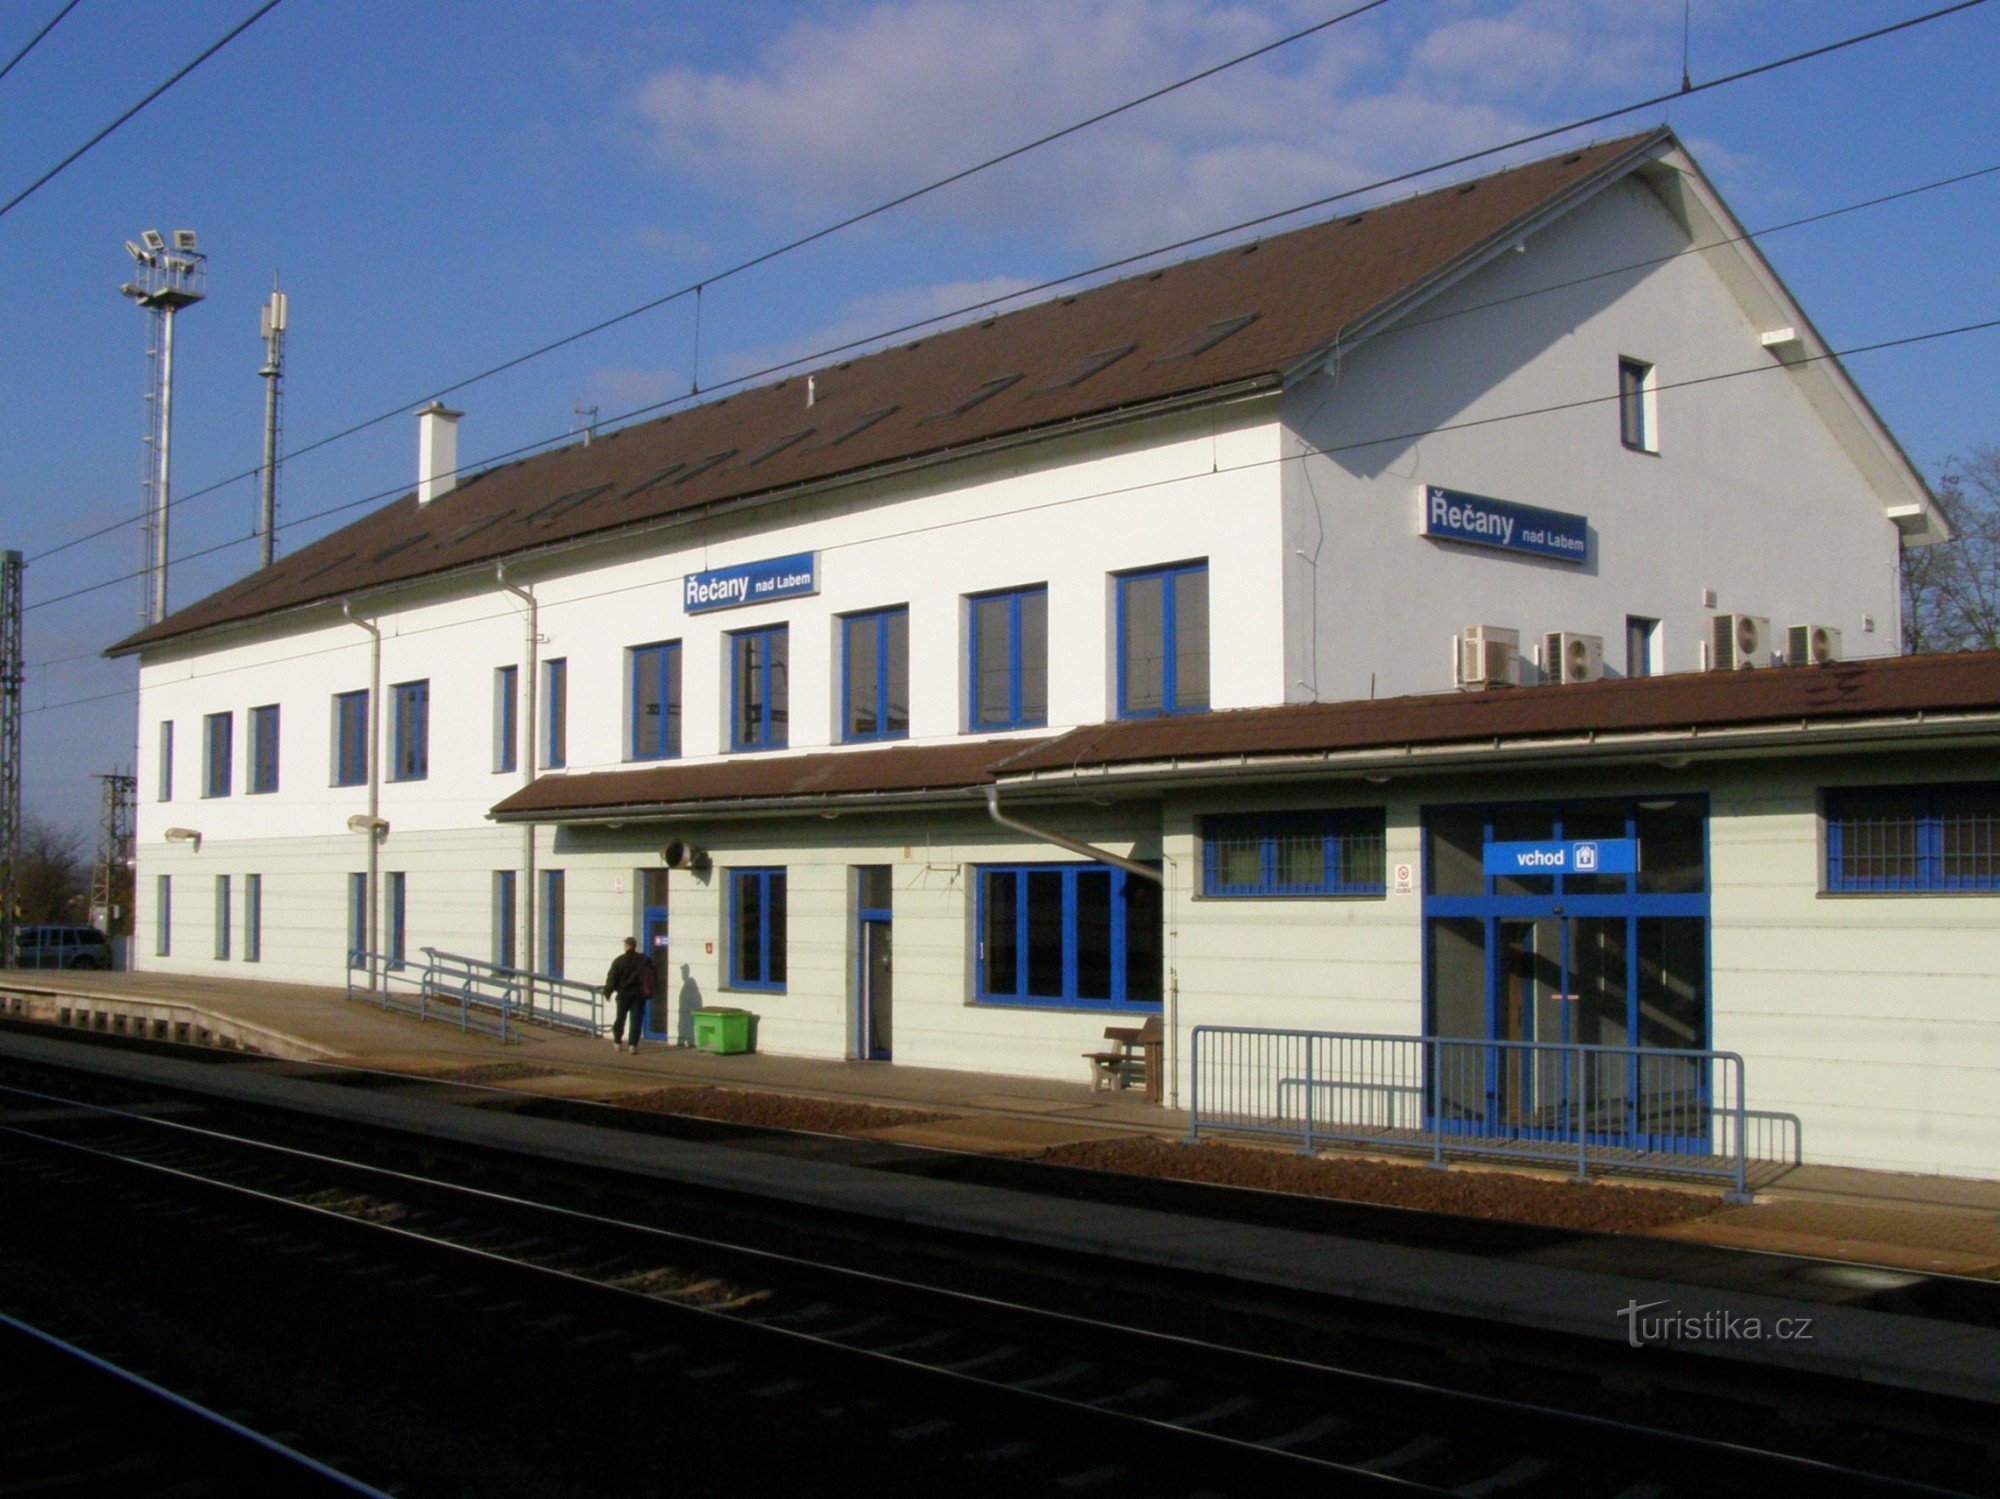 Řečany nad Labem - ga đường sắt